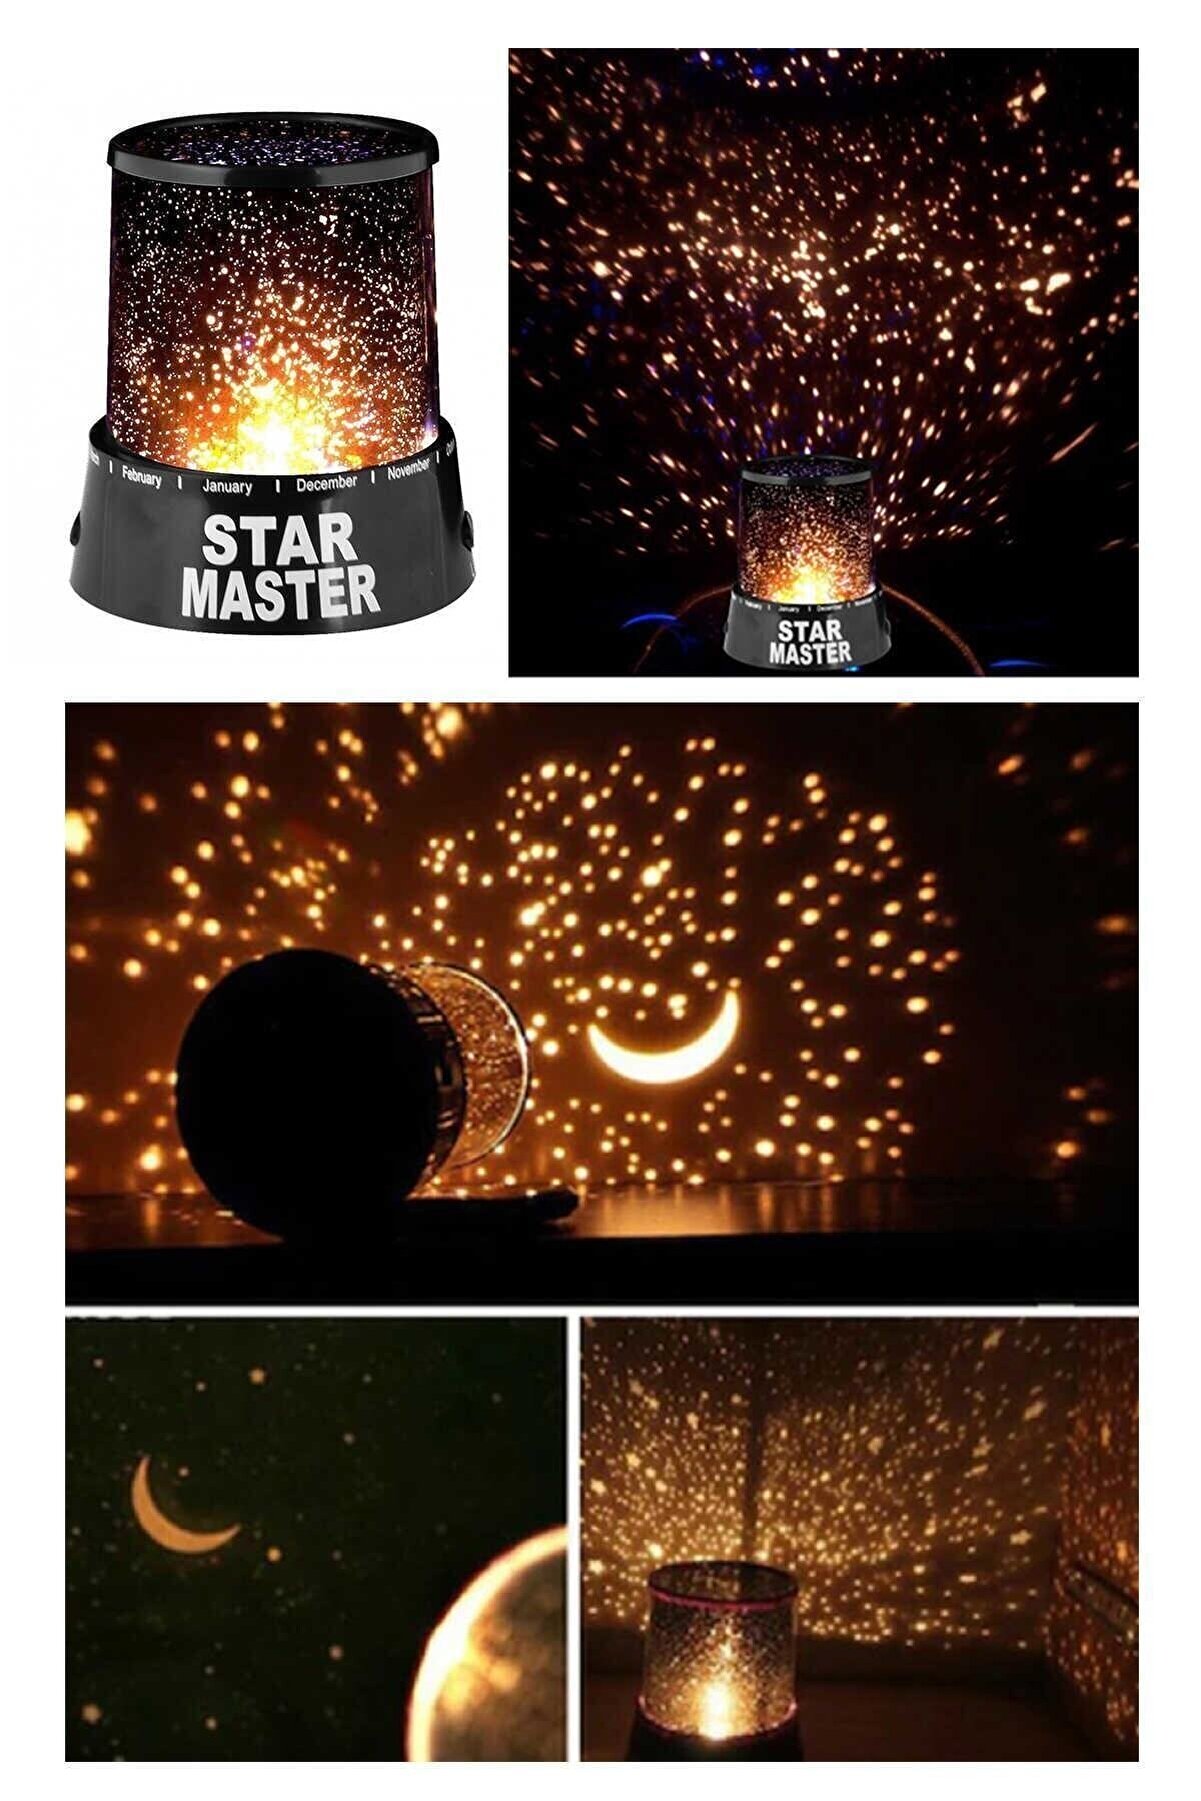 Amasra Dekoratif Gece Lambası Yıldızlı Projeksiyon Tavan Işık Yansıtma Star Master